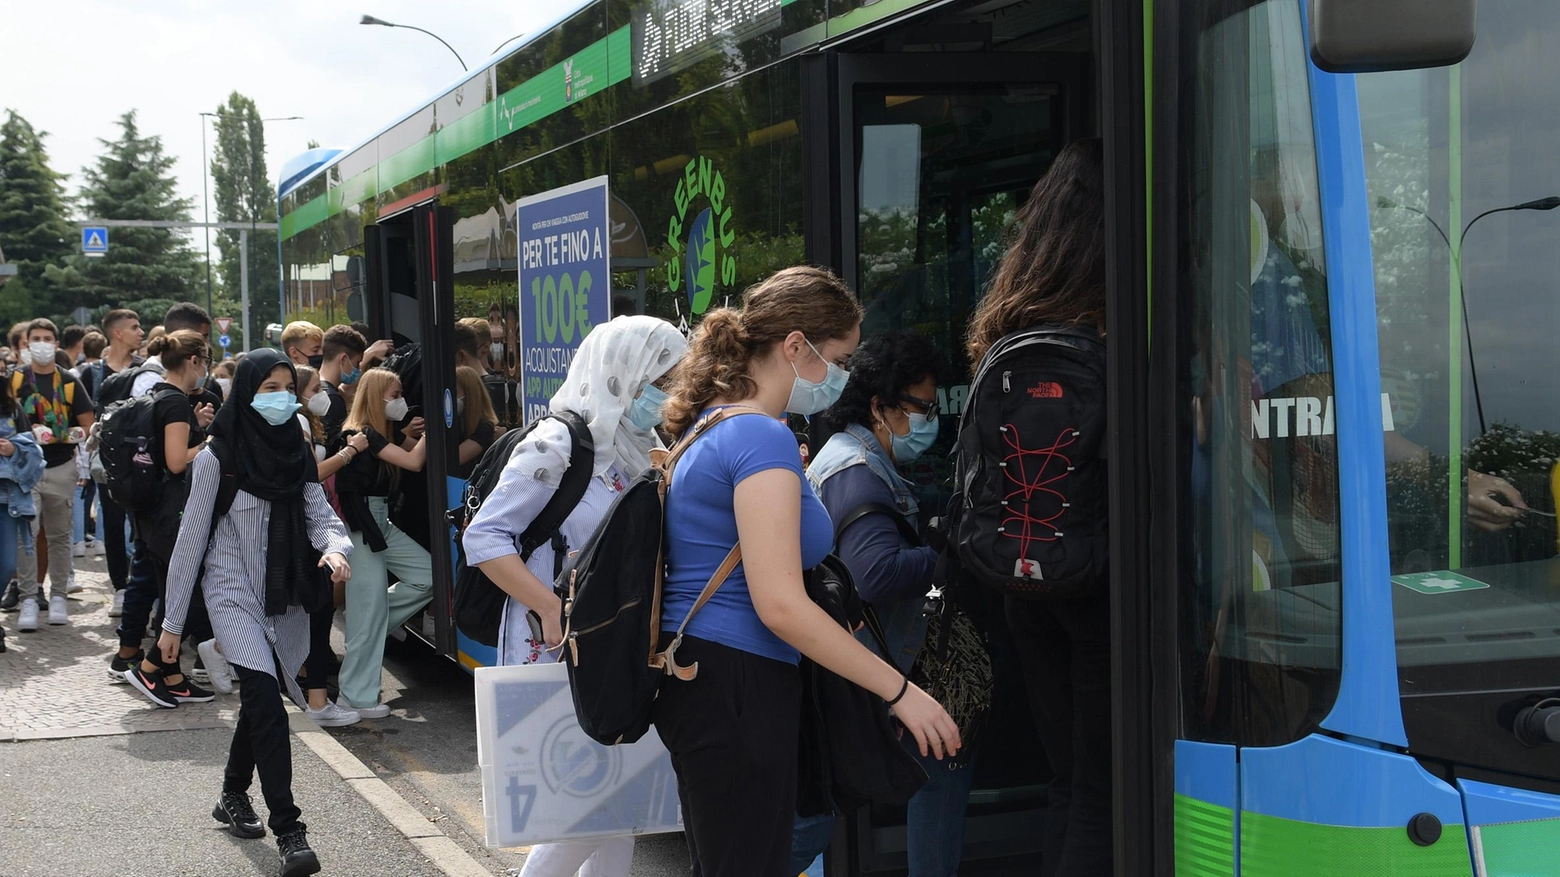 La sfida di Tper allo smog "Piano da oltre 200 milioni per rinnovare la flotta dei bus"